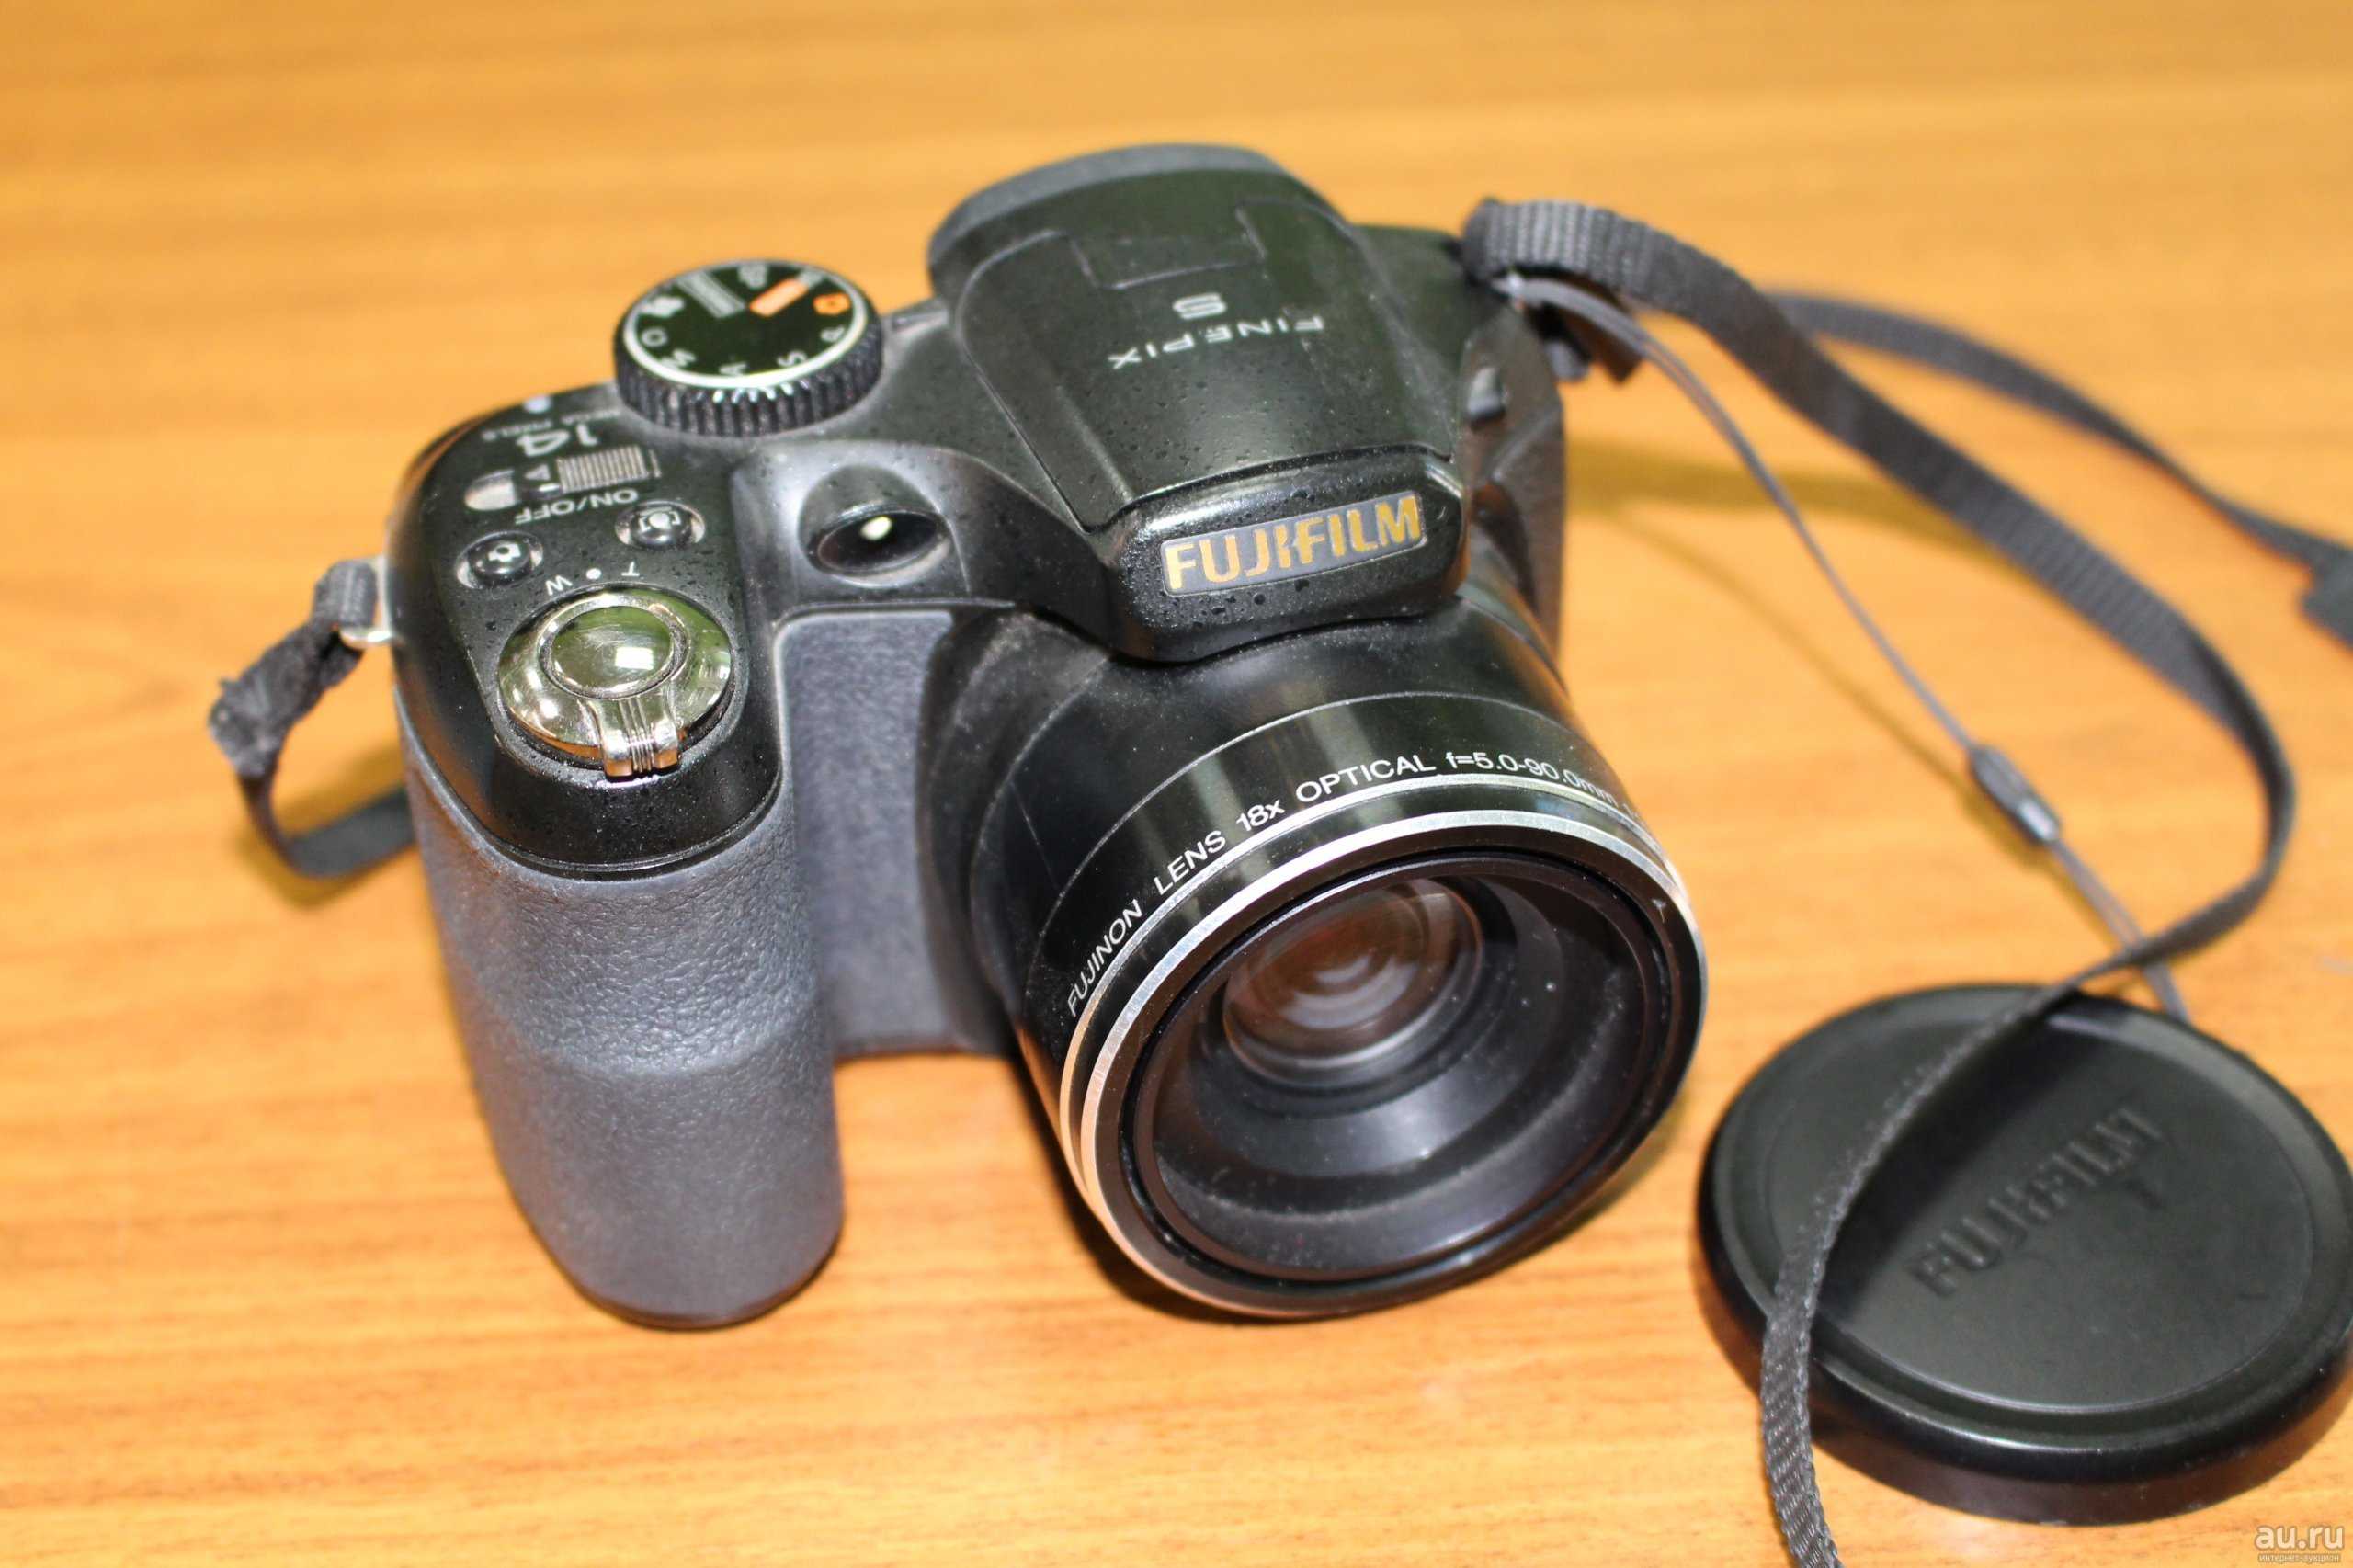 Fujifilm finepix s2800hd - купить , скидки, цена, отзывы, обзор, характеристики - фотоаппараты цифровые